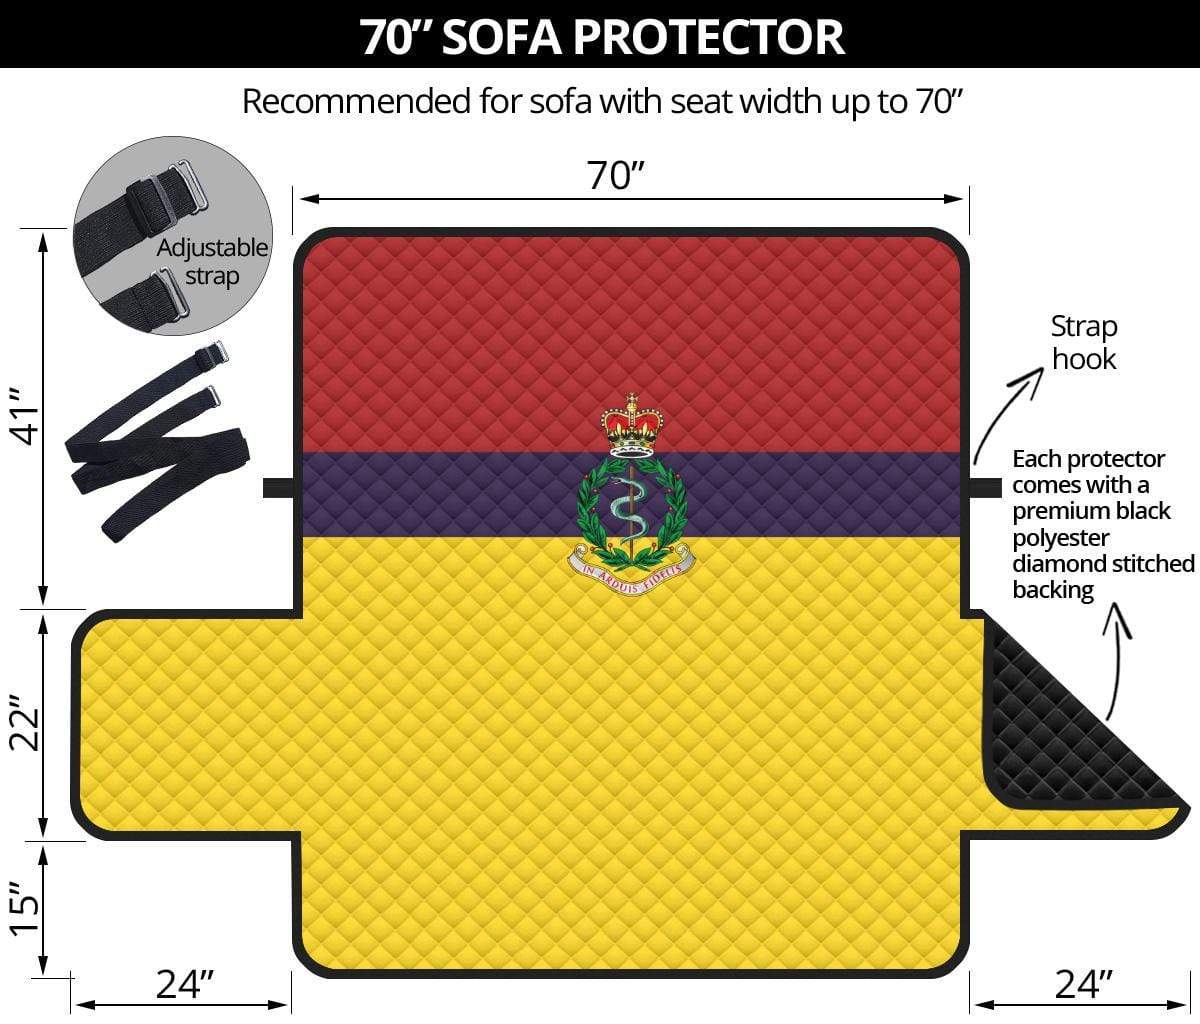 sofa protector 70" 70 Inch Sofa Royal Army Medical Corps 3-Seat Sofa Protector